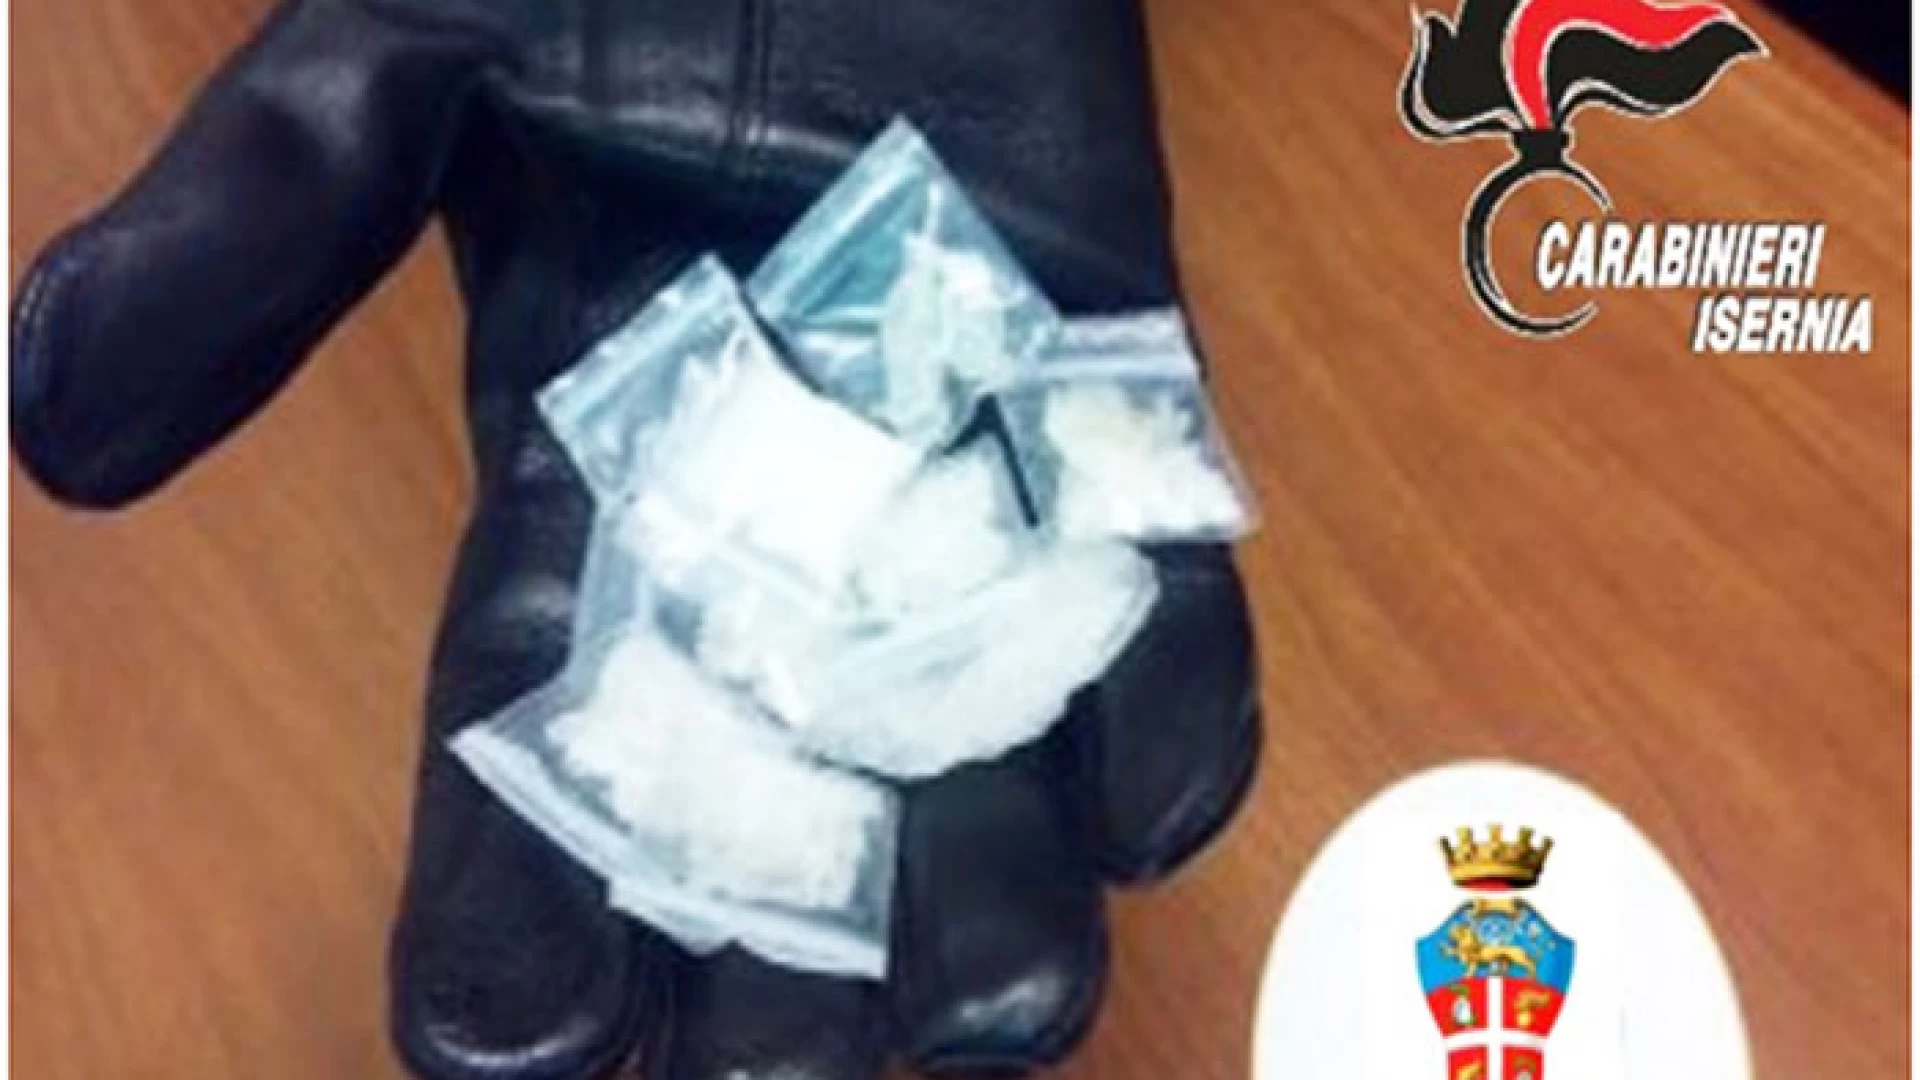 Rionero Sannitico: i Carabinieri beccano uno studente universitario isernino trovato in possesso di diverse dosi di cocaina. Scattata l’operazione Pasqua Sicura.